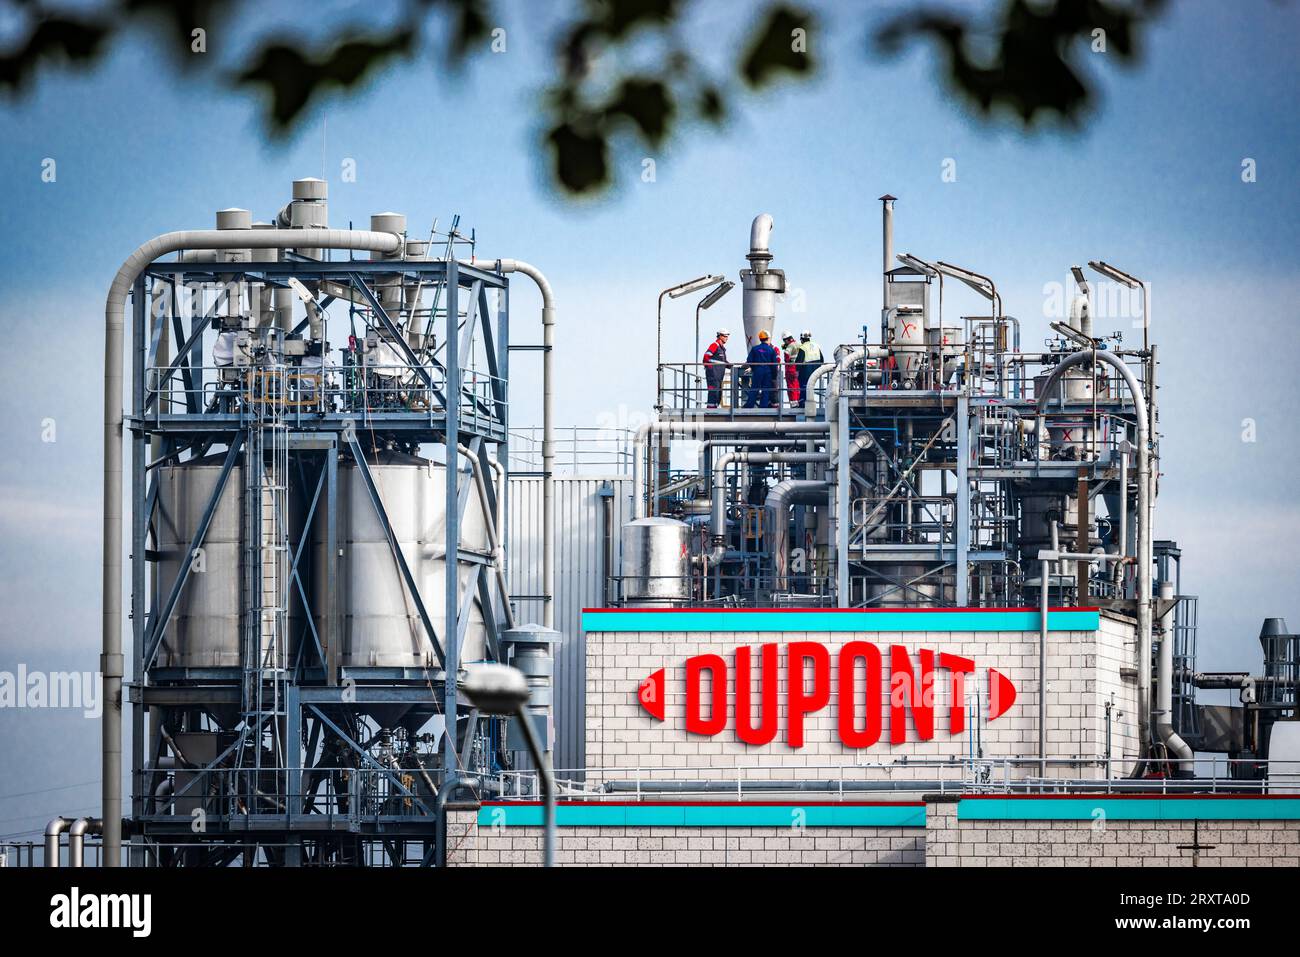 DORDRECHT - esterno della fabbrica chimica Chemours. Il tribunale di Rotterdam statuisce sul caso relativo alla fabbrica chimica. Quattro comuni vogliono che la società (e il suo predecessore DuPont) sia ritenuta responsabile per l'inquinamento da sostanze nocive PFAS. ANP JEFFREY GROENEWEG netherlands Out - belgium Out Foto Stock